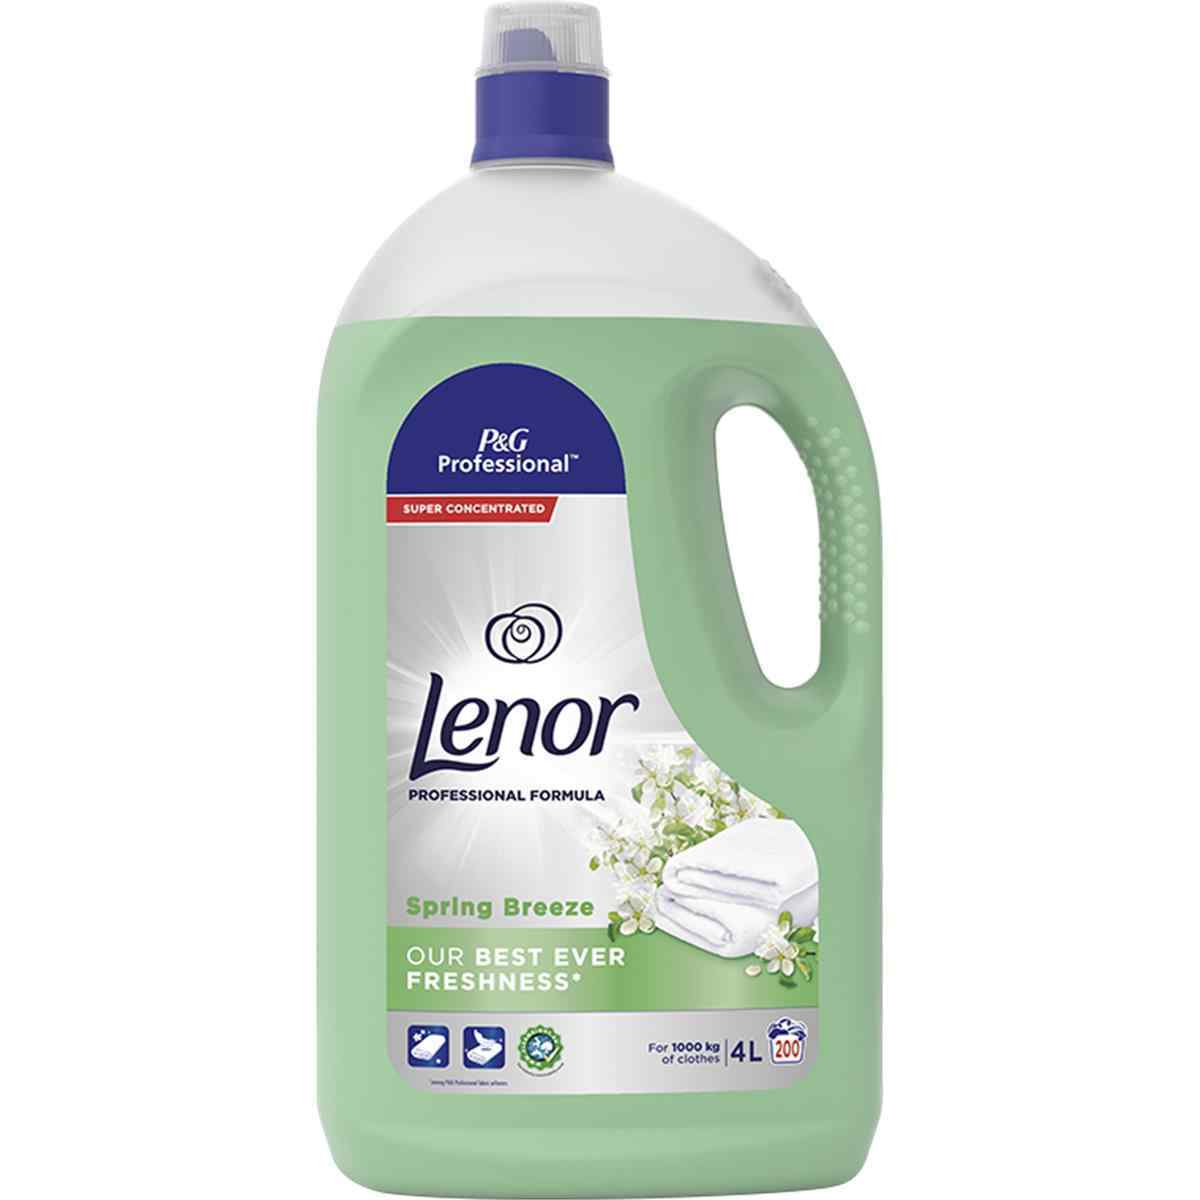 P&G-Lenor Spring Breeze Softener (4ltr) - Green